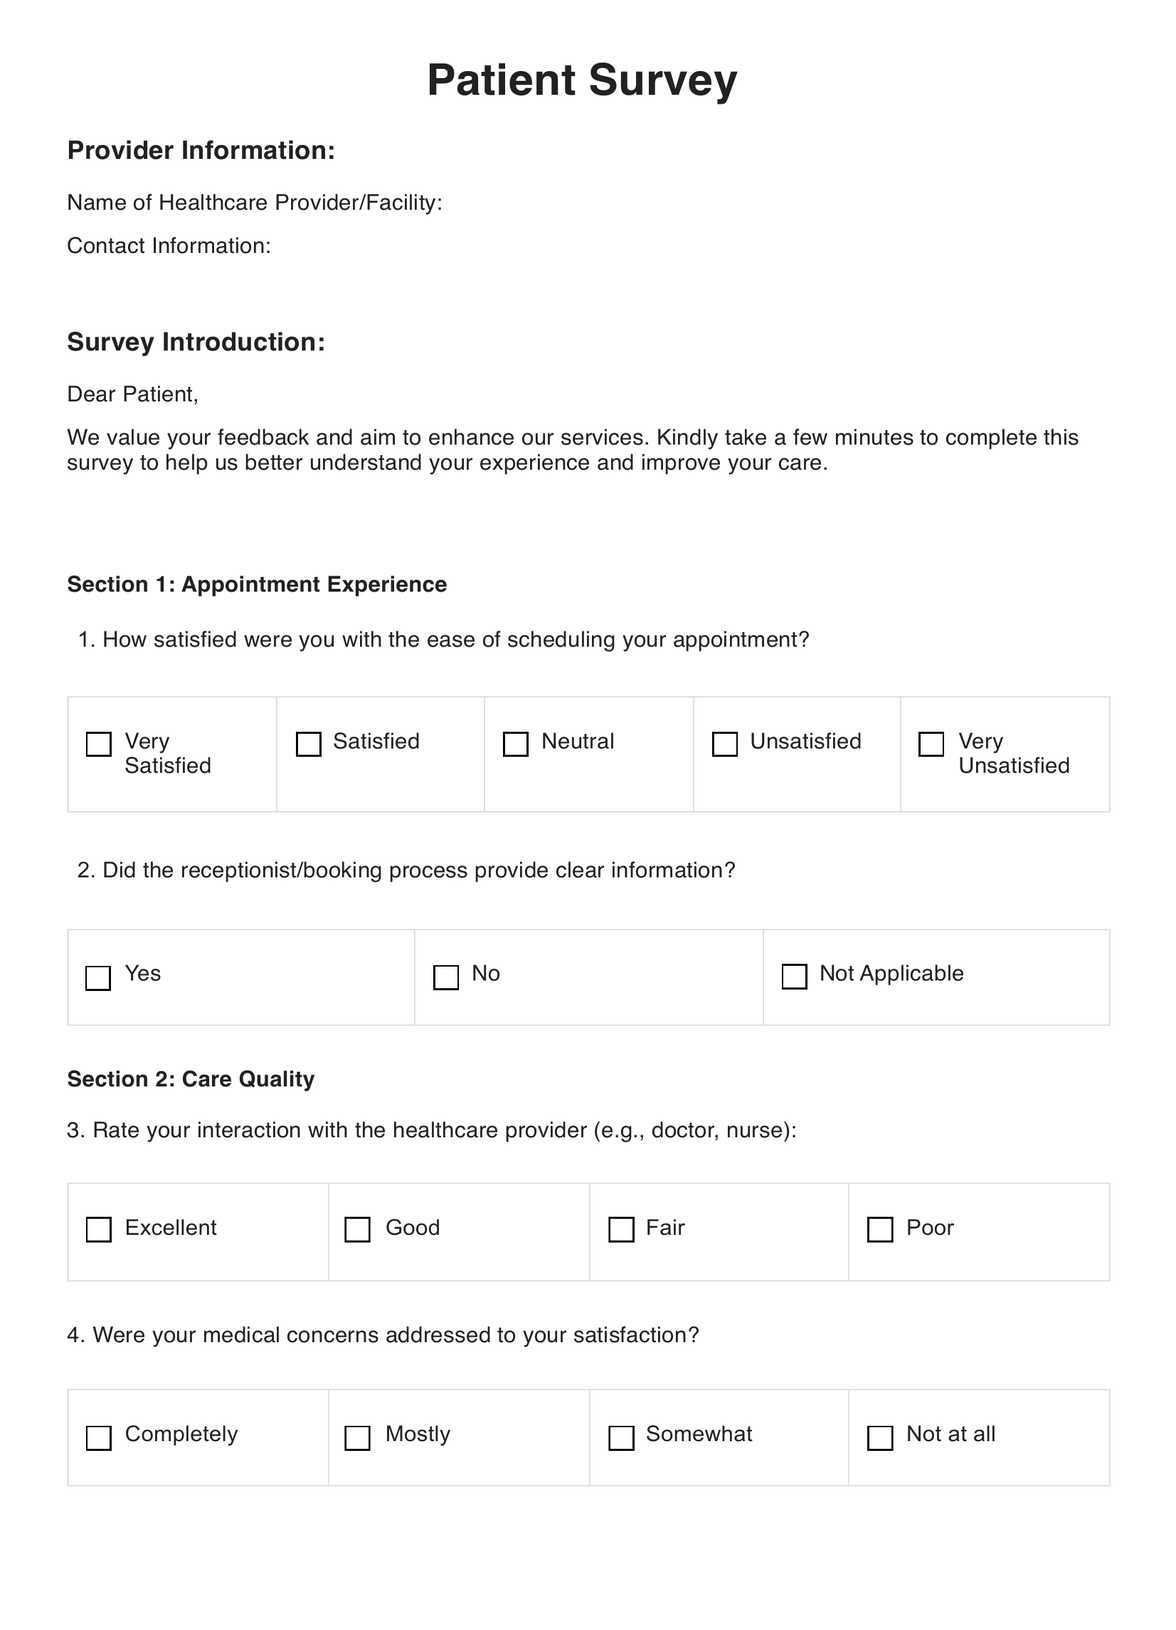 Patient Surveys PDF Example